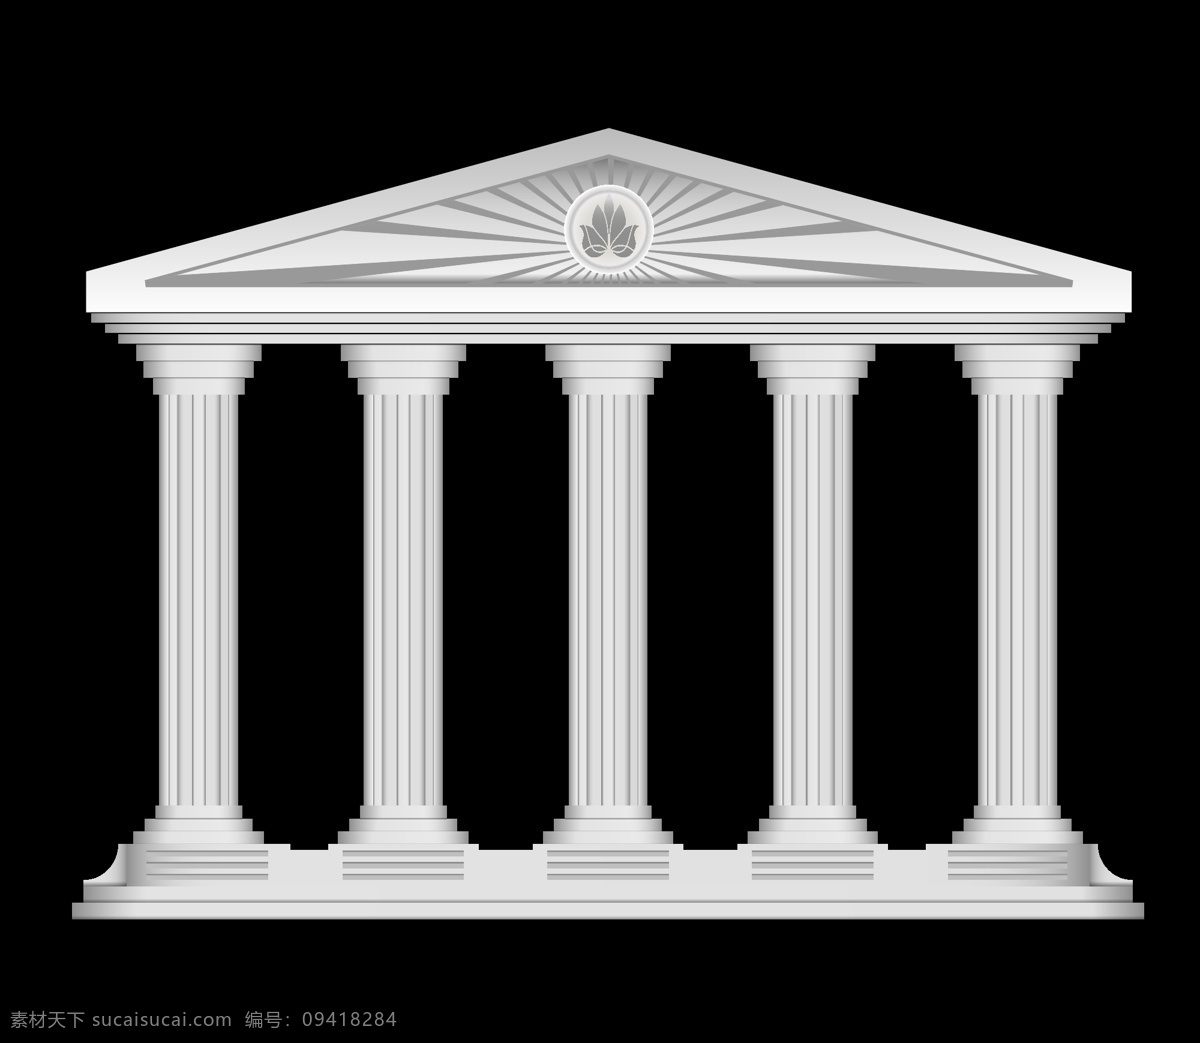 漂亮 白色 古罗马 建筑 漂亮的建筑 白色建筑 古罗马建筑 古代建筑 罗马柱 生活百科 矢量素材 黑色